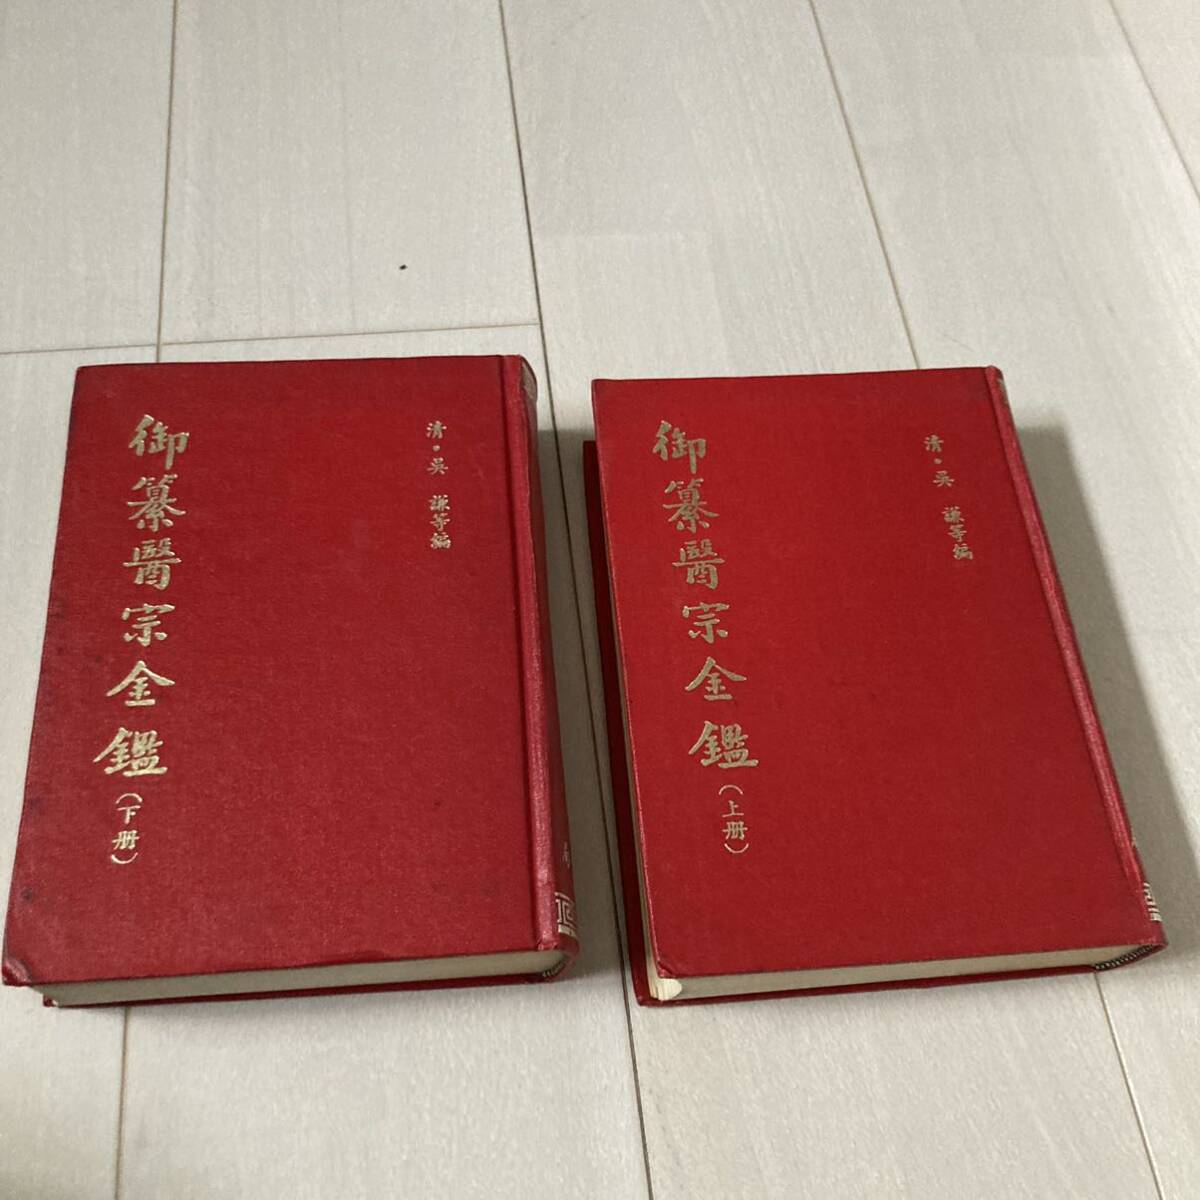 J китайский ..68 год выпуск Tang книга@. печать версия . оборудование книга@ China документ [.... все .] все 2 шт. .